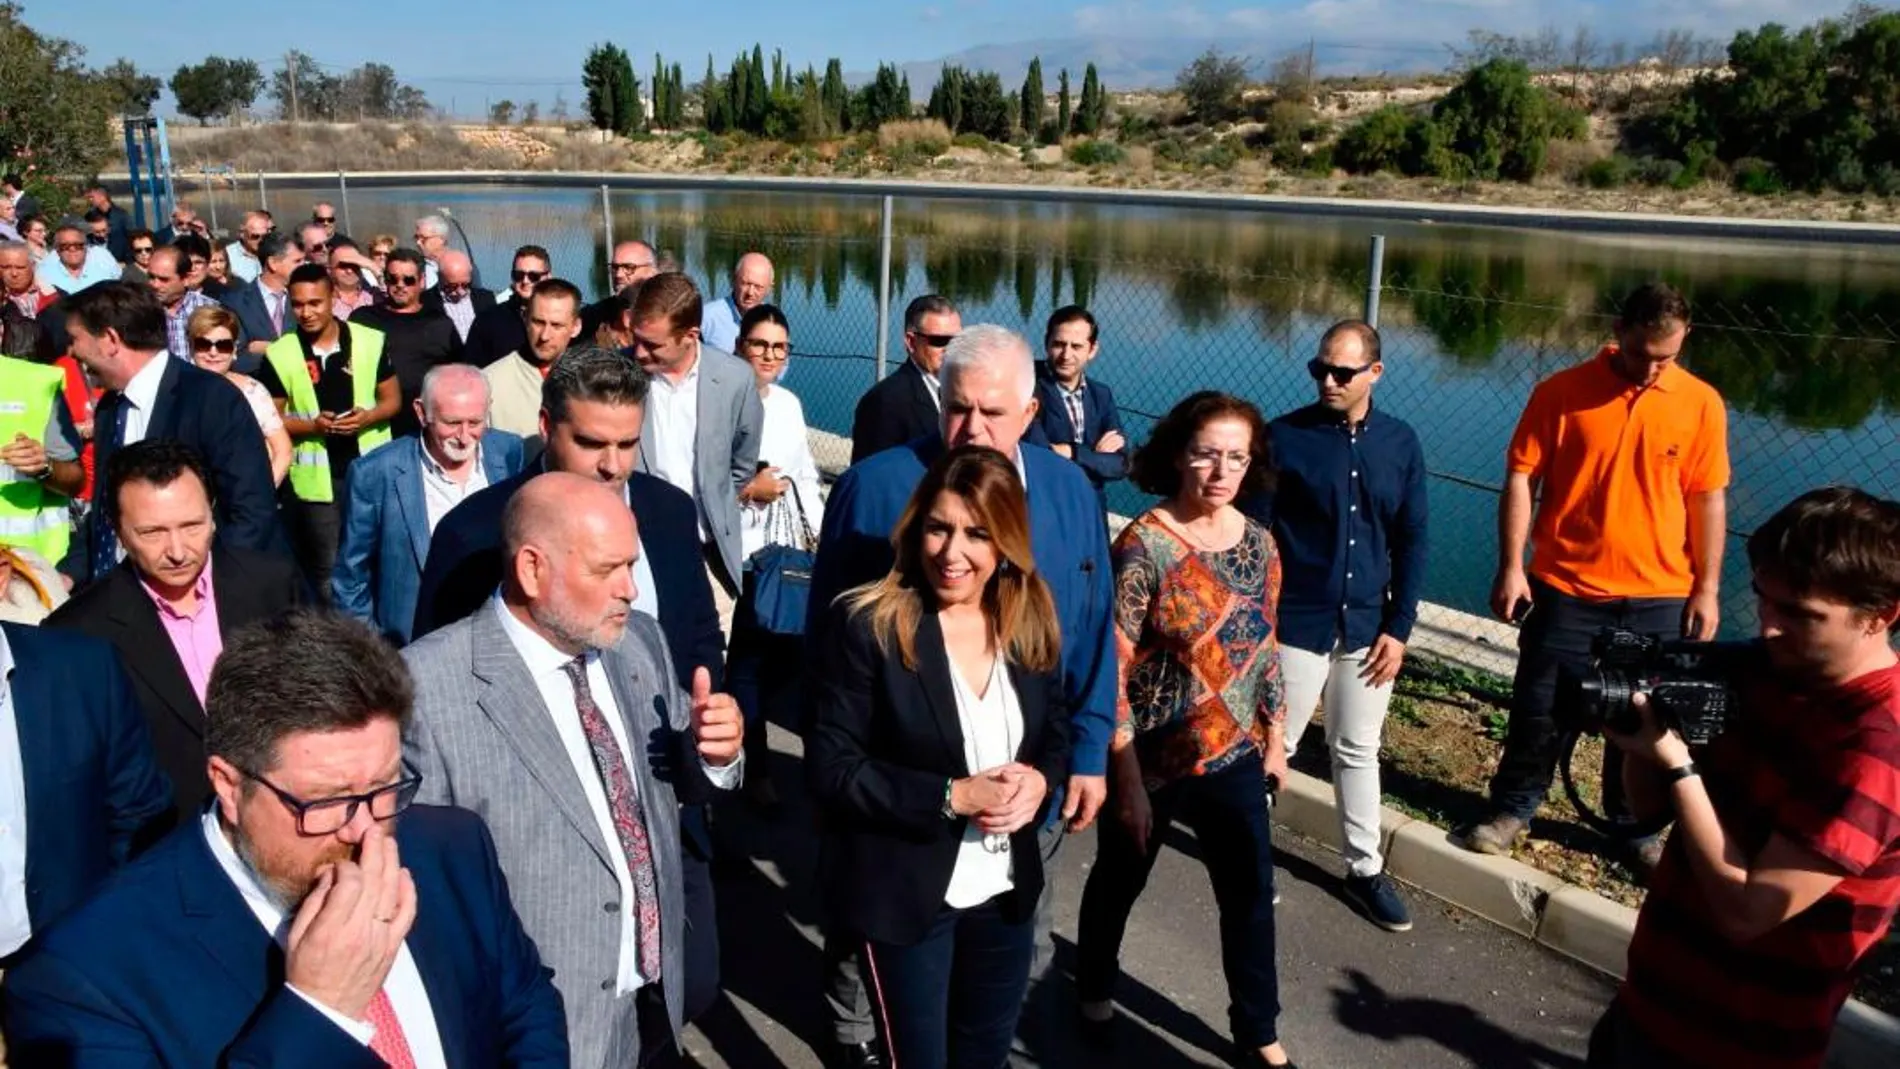 La presidenta de la Junta de Andalucía, Susana Díaz, camina entre otros junto al presidente de la comunidad de regentes Cuatro Vegas en Viator / Foto: Efe